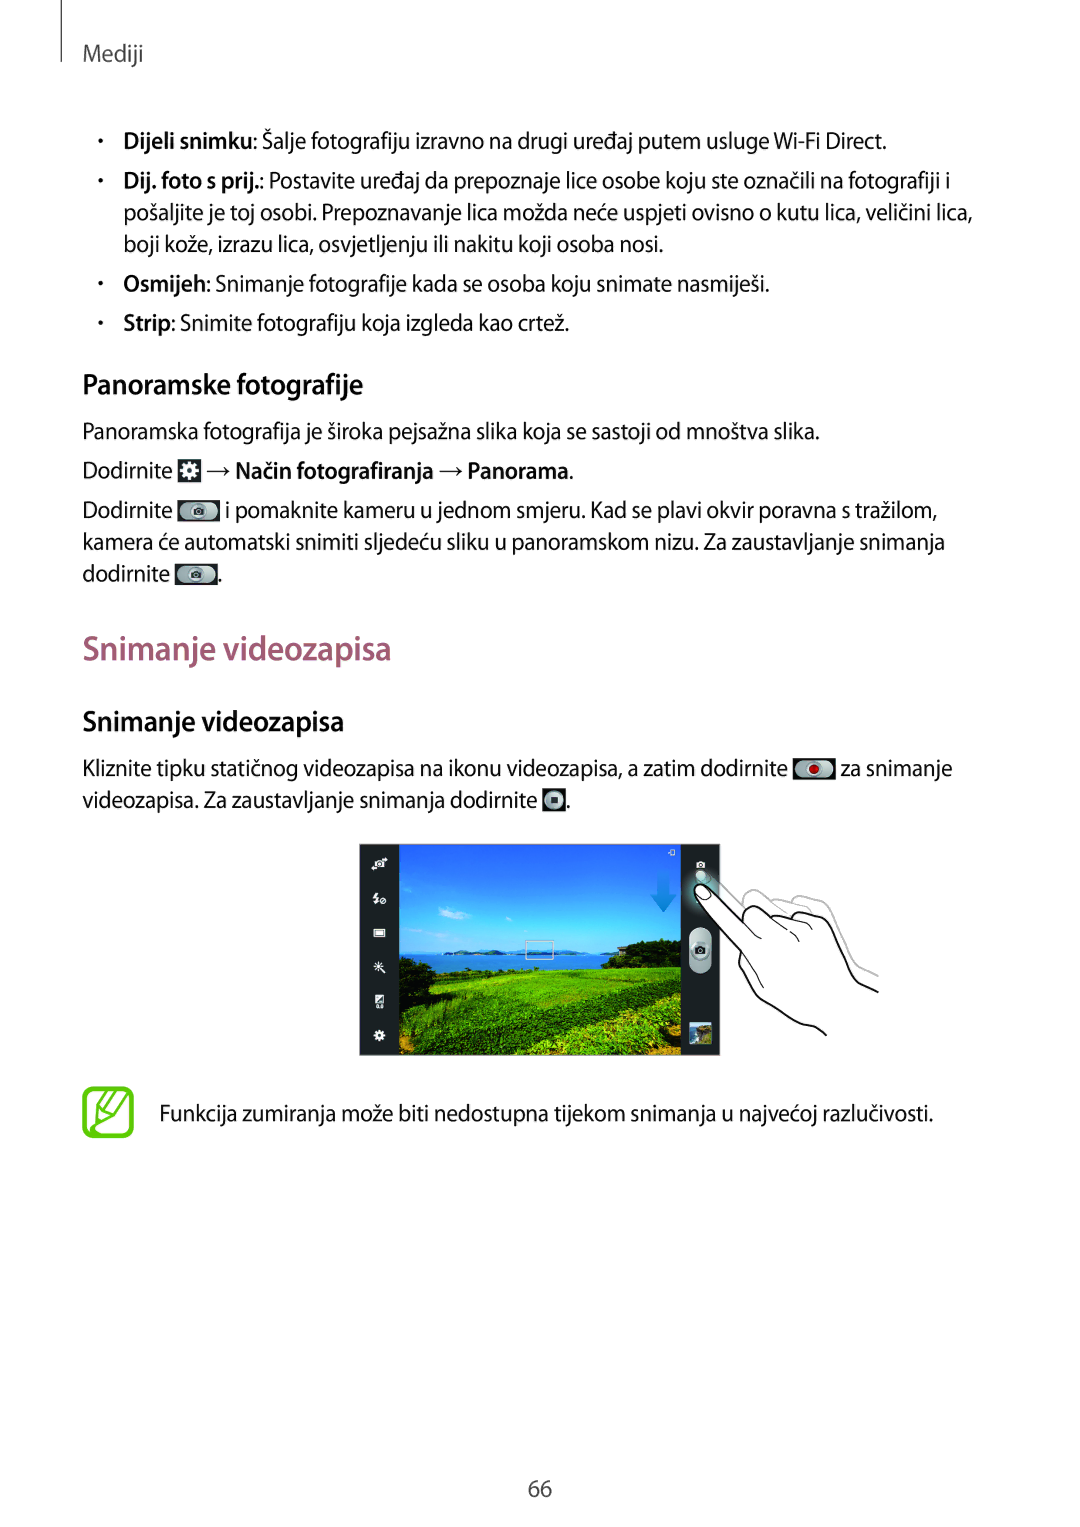 Samsung GT-N8010GRATRA manual Snimanje videozapisa, Panoramske fotografije, Dodirnite →Način fotografiranja →Panorama 